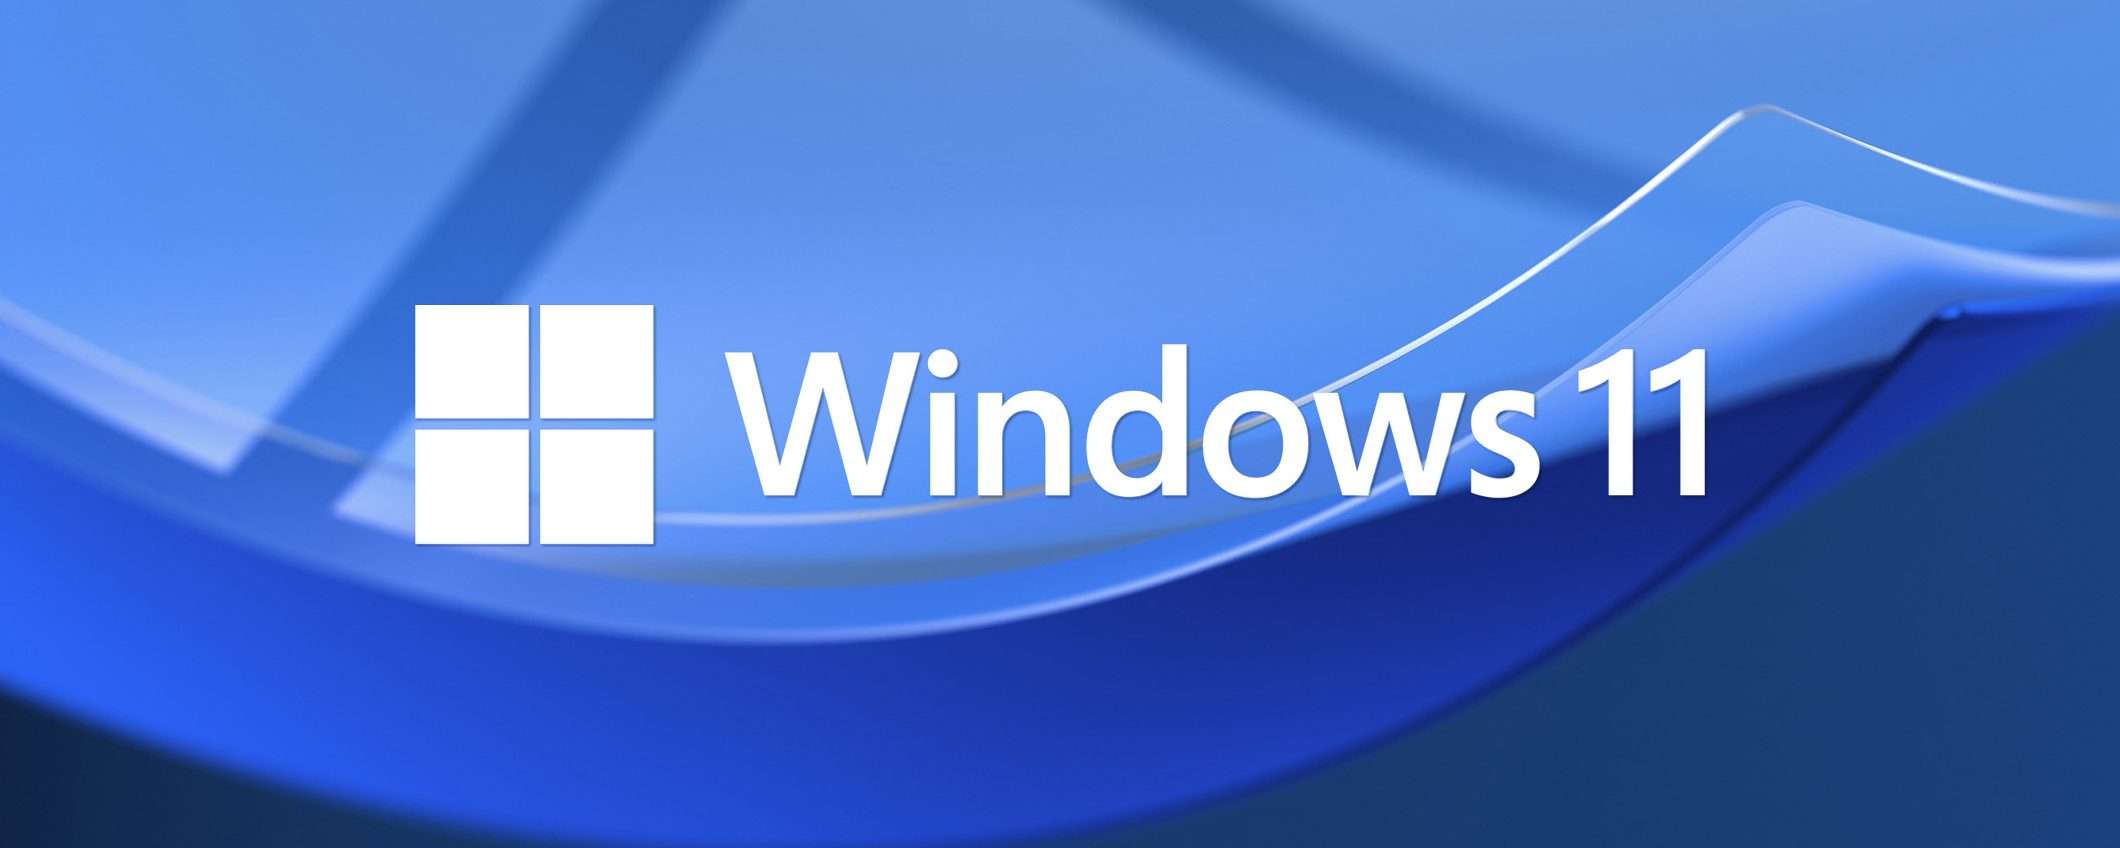 Windows 11, Esplora file mostra la pubblicità